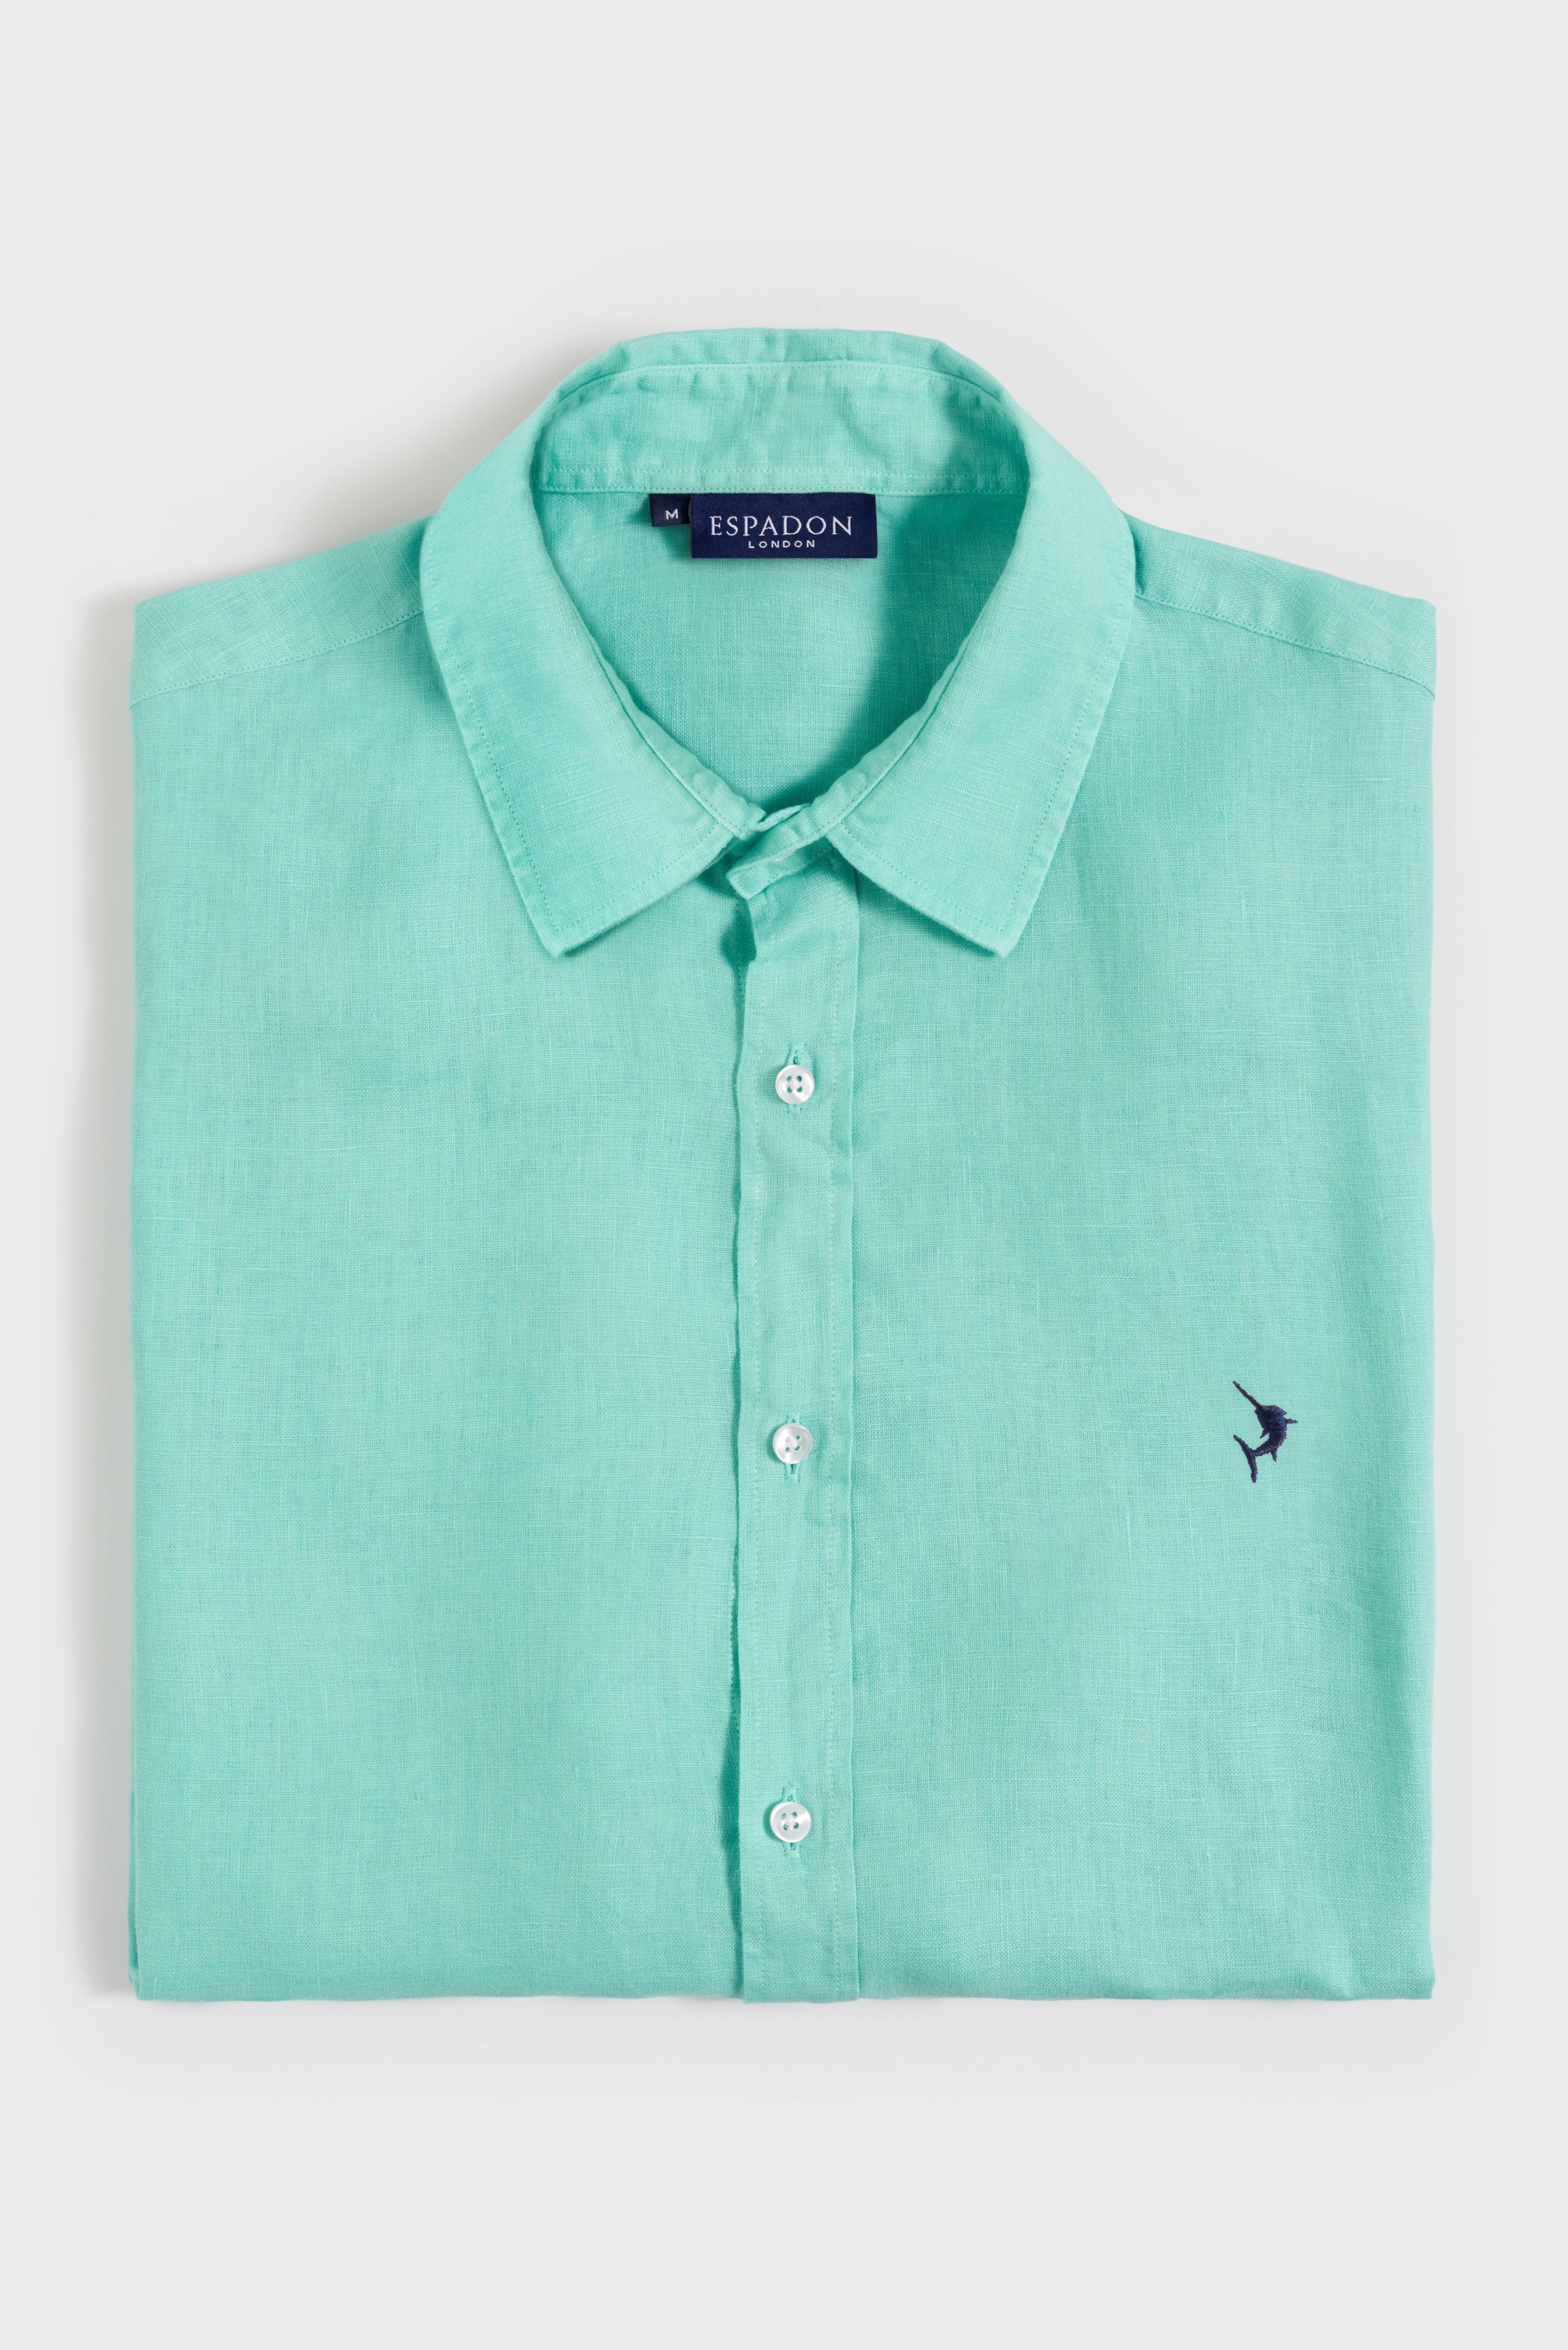 Espadon Classic Linen Shirt - Mint